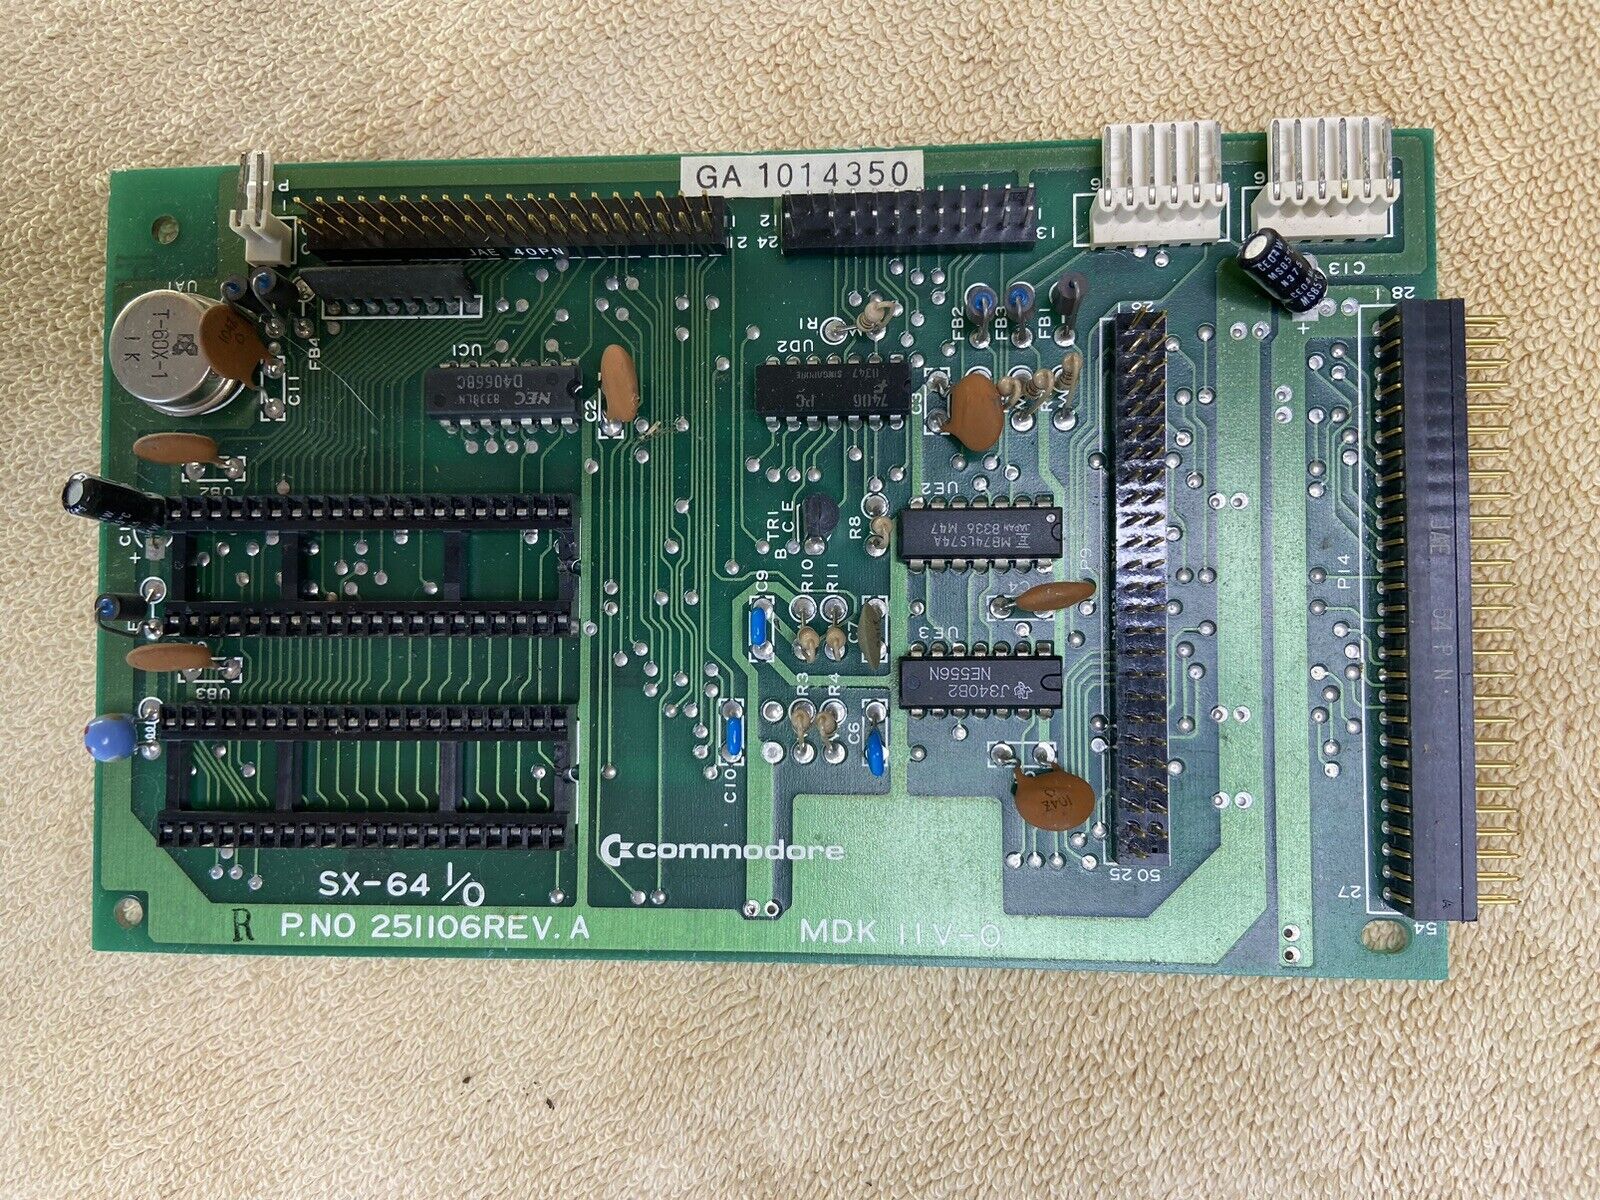 Commodore SX-64 I/O Board - Works - 251106 - SX64 - NO CIA'S